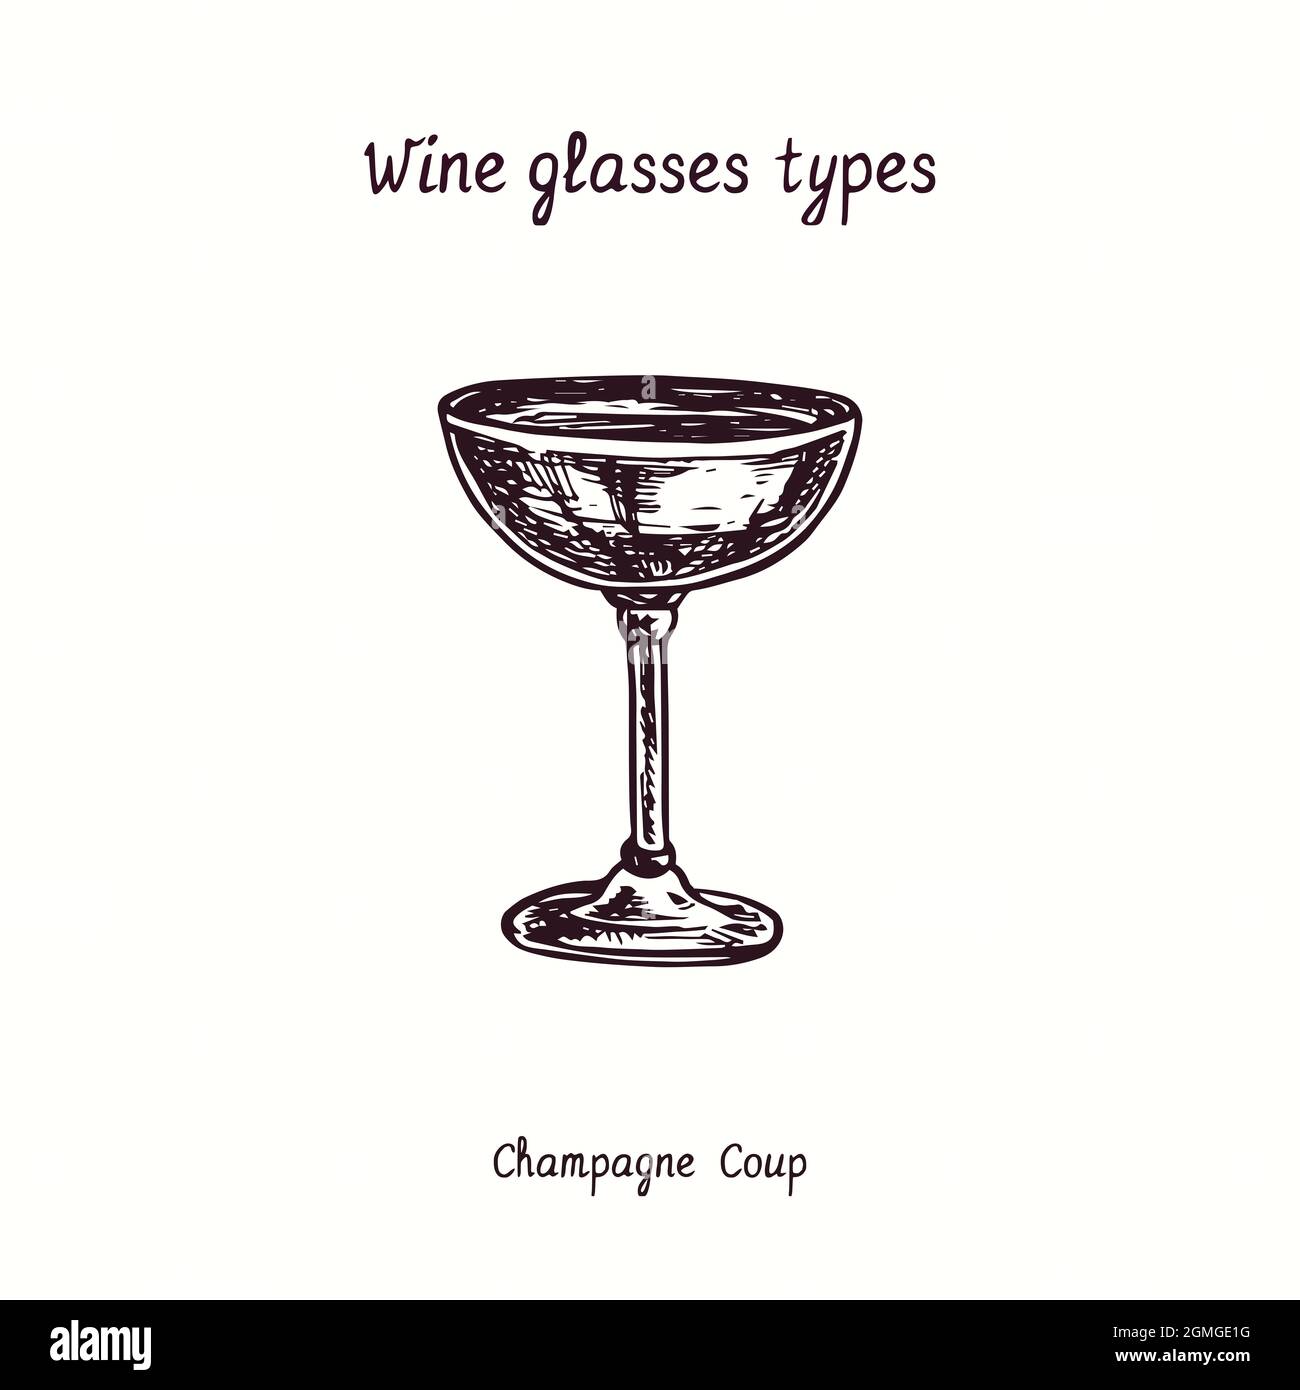 Collection types de verres à vin, champagne Coup. Dessin d'une boisée noire et blanche à l'encre. Banque D'Images